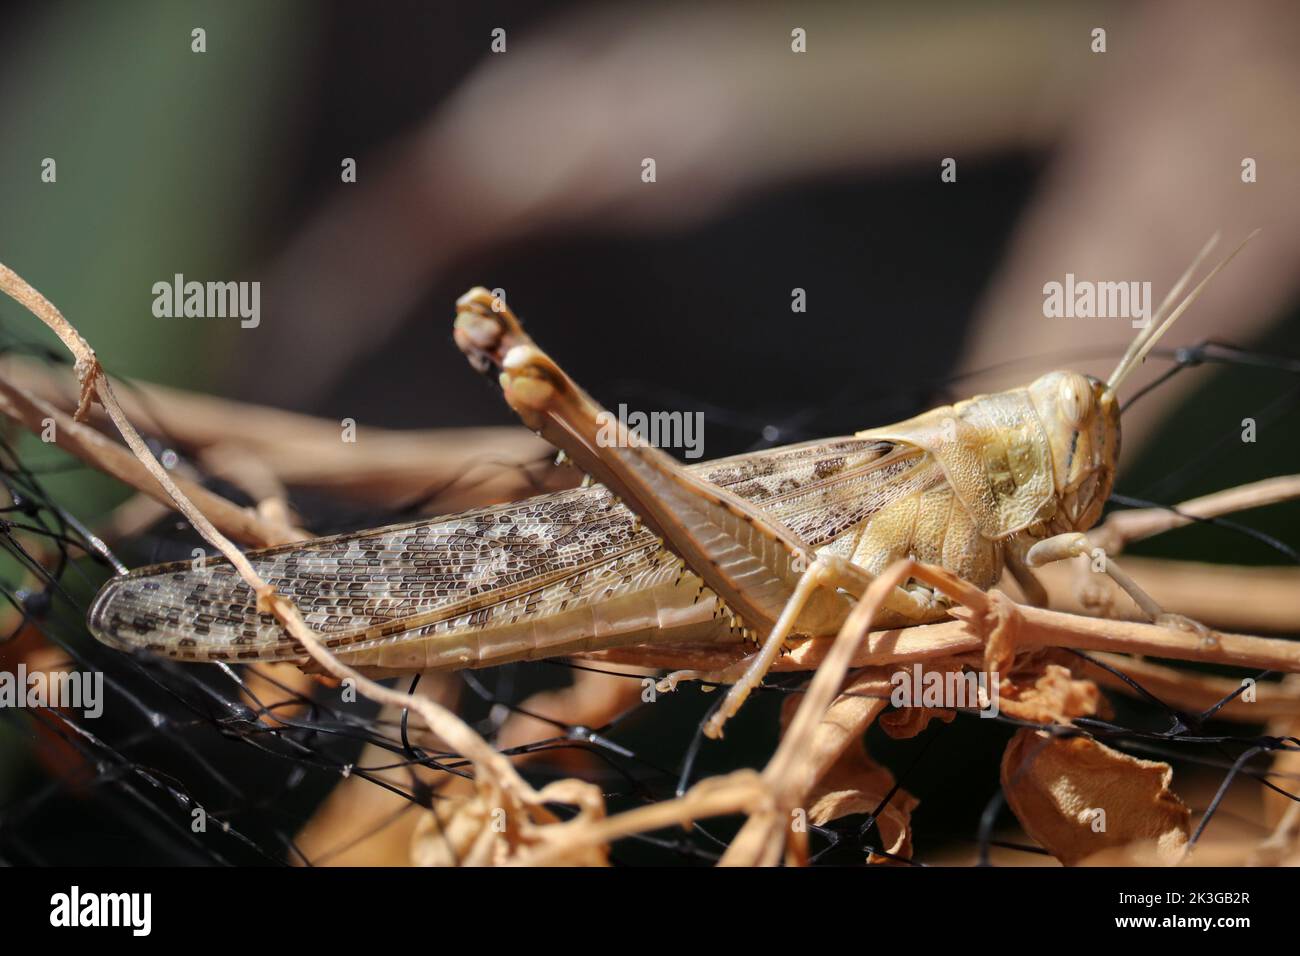 Adult desert locust or Schistocerca gregaria standing in a garden in Gilbert, Arizona. Stock Photo